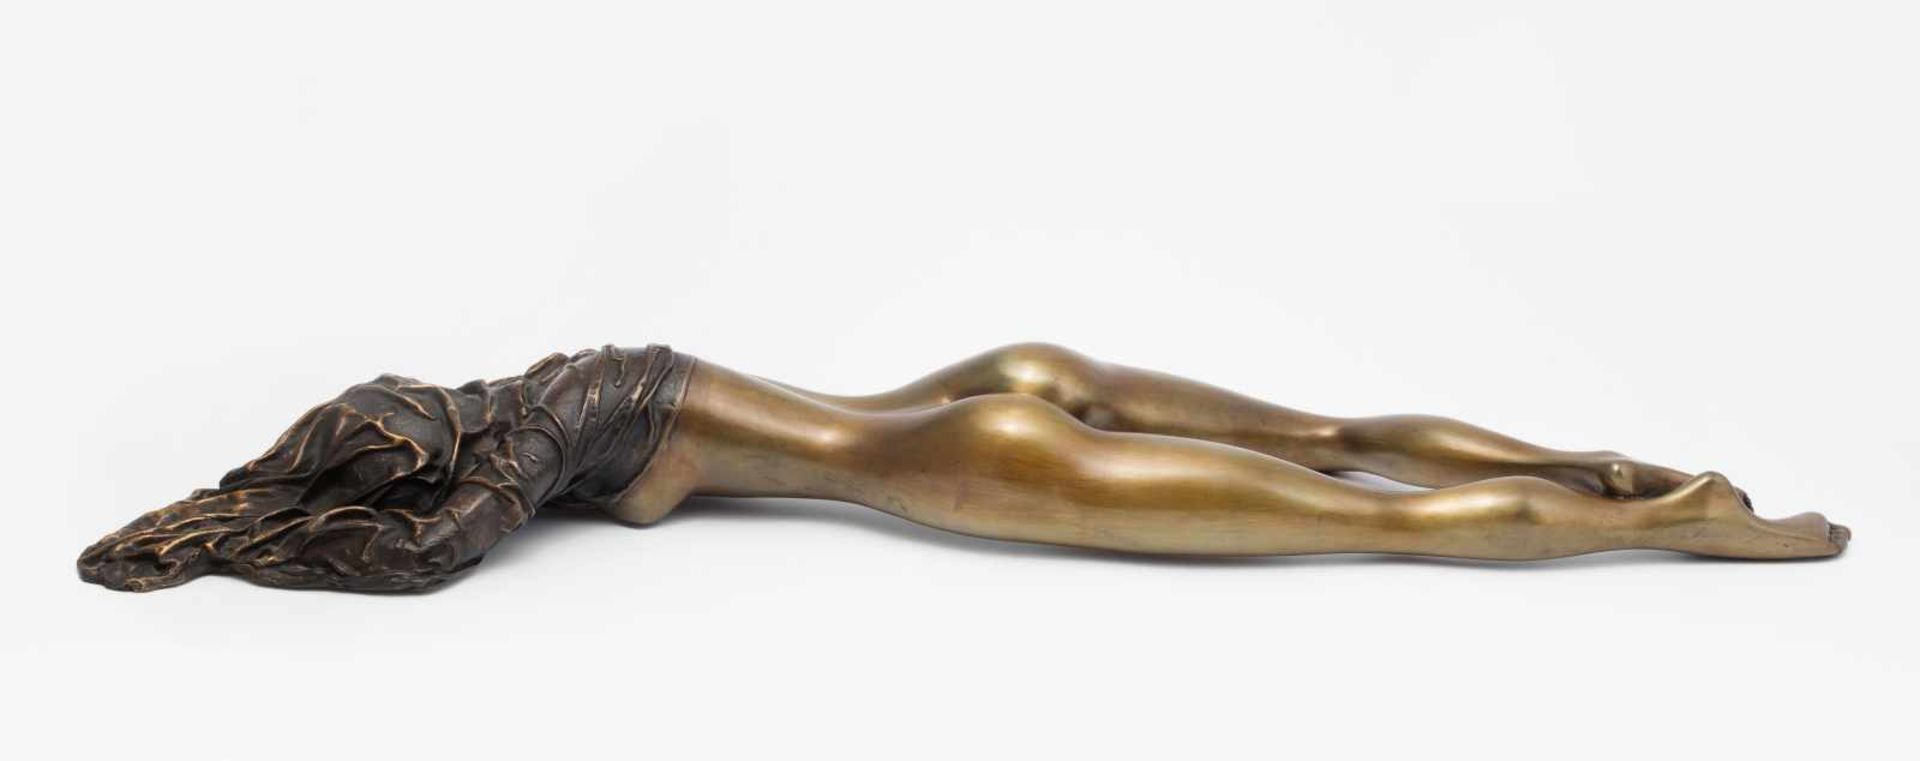 Bruni, Bruno(Gradara 1935)Venere Coperta. Liegender Frauenakt. Bronze. 54/250. Auf dem Boden